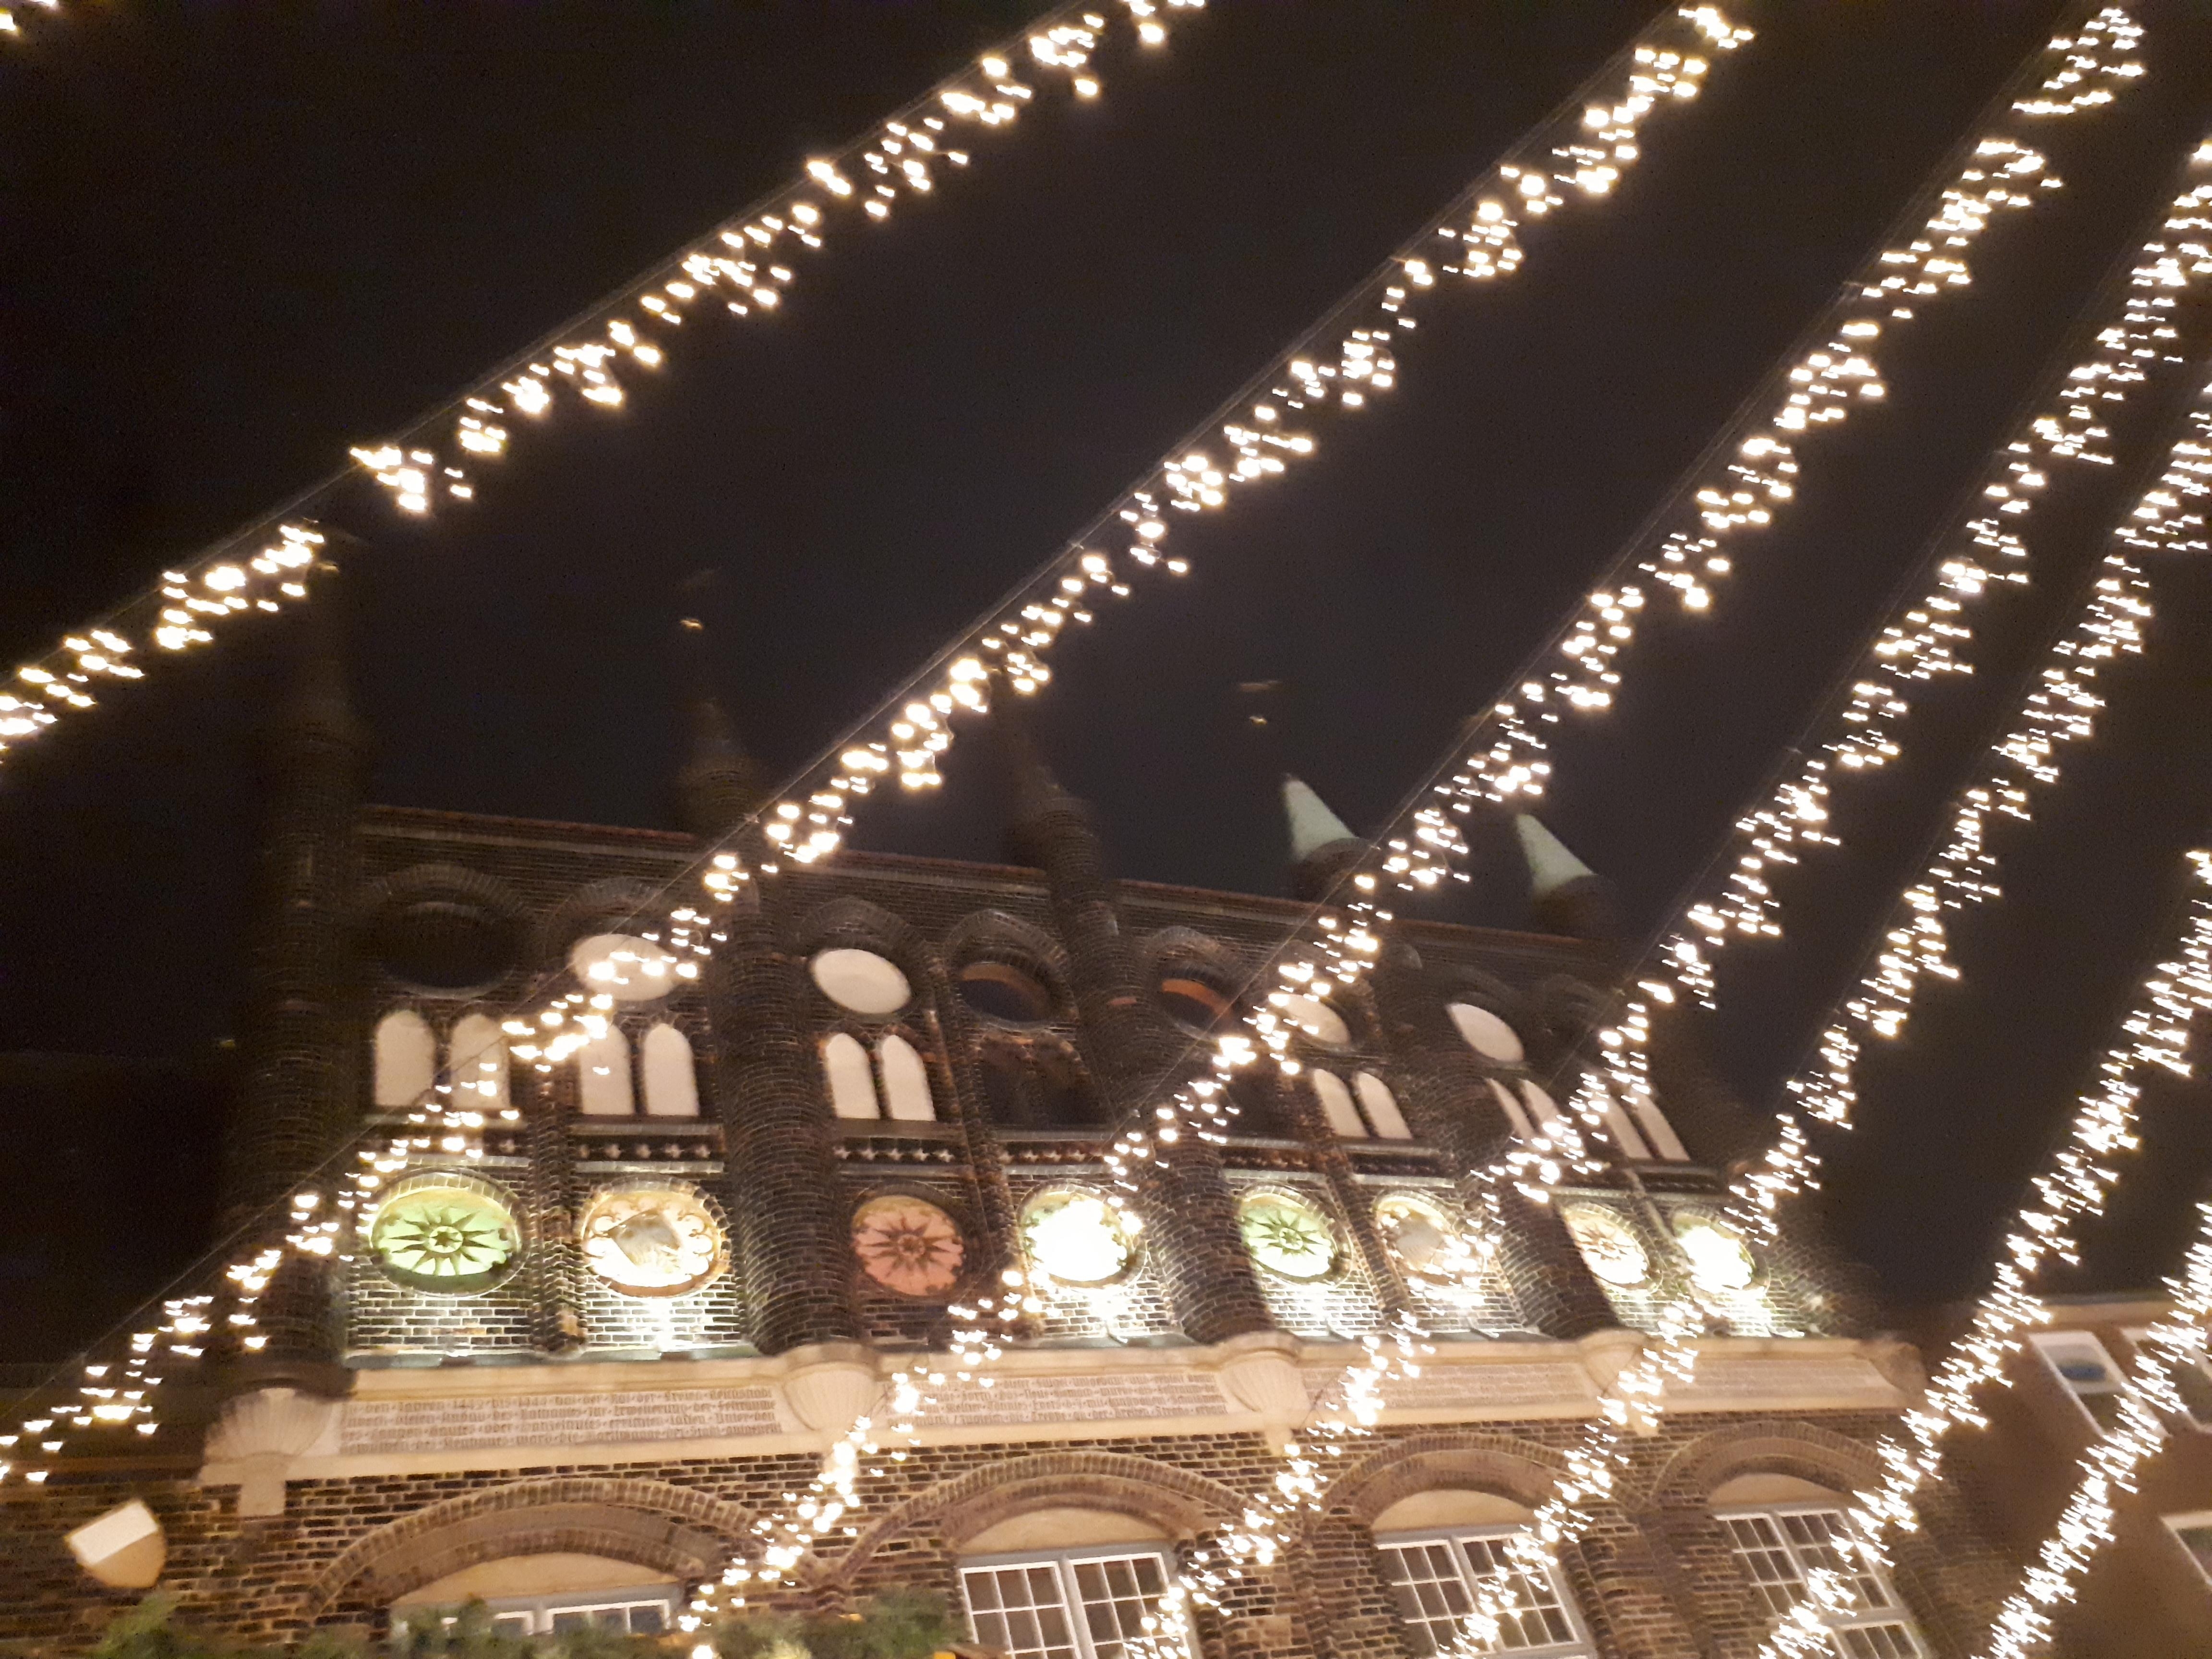 Empfehlenswerte Hansestadt mit viel Charme ❤
#weihnachtsmarkt #lübeck #historischealtstadt 